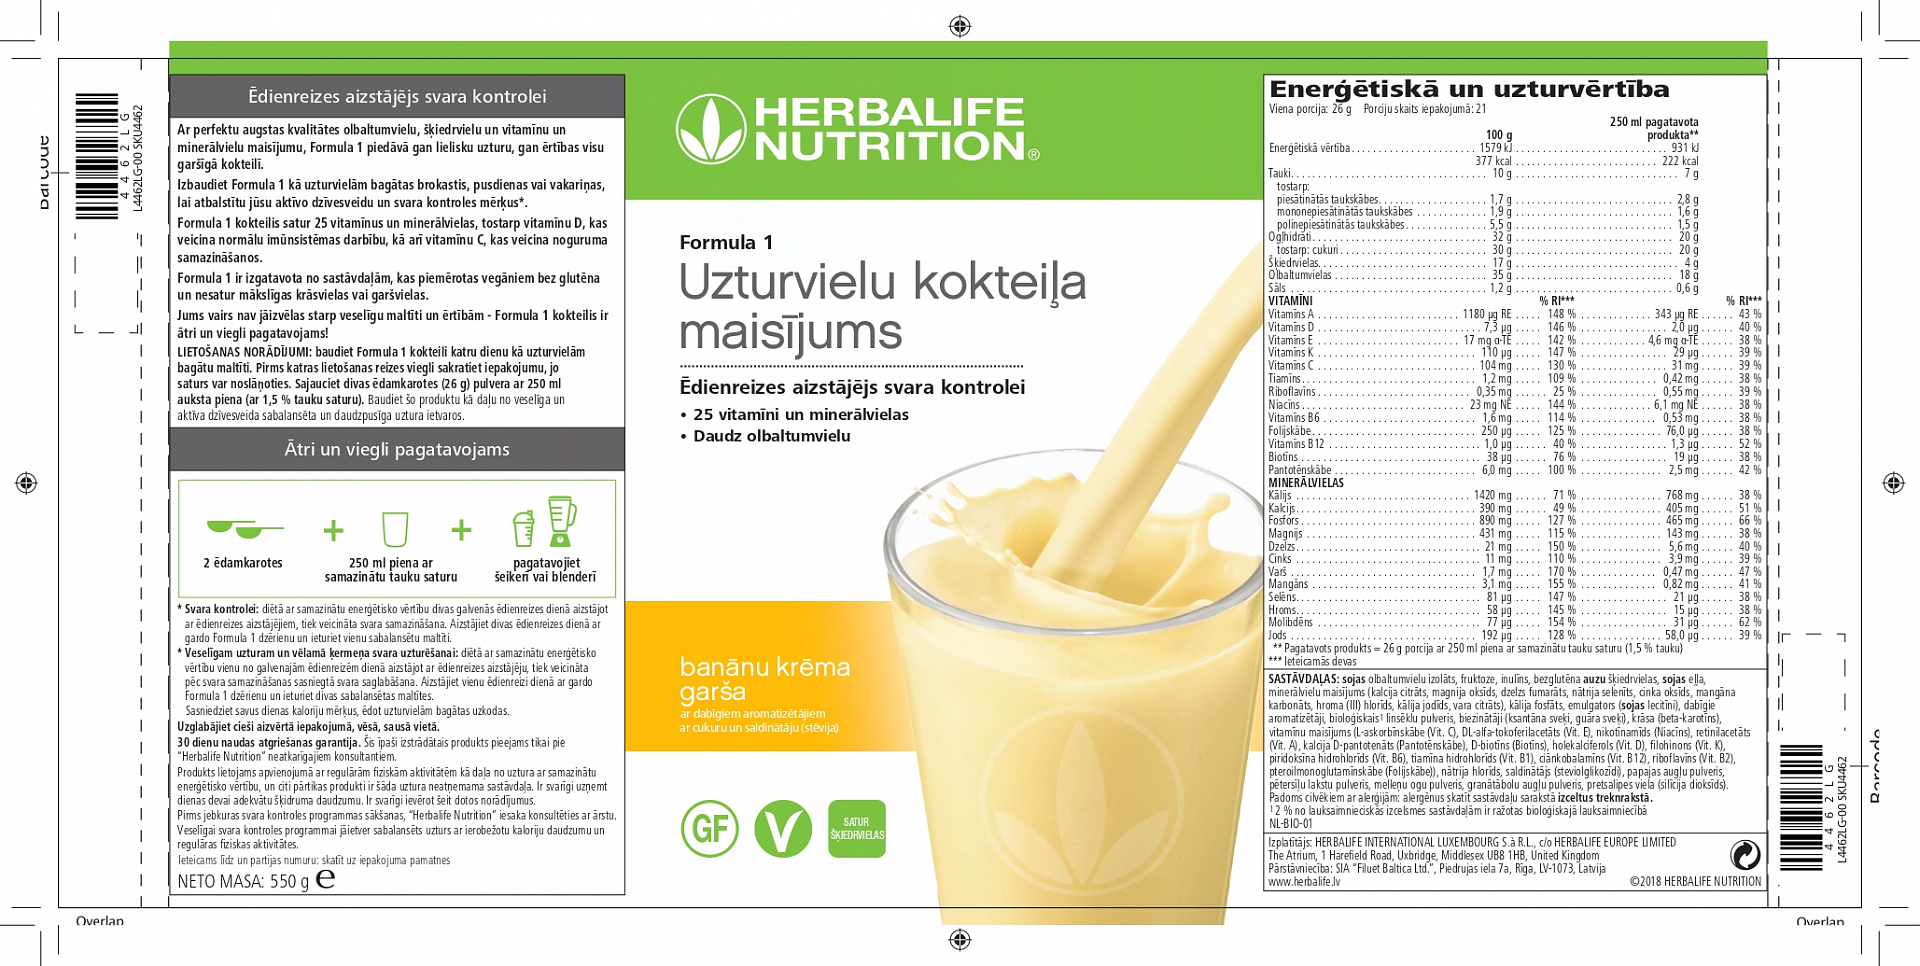 Info nutricional leche entera